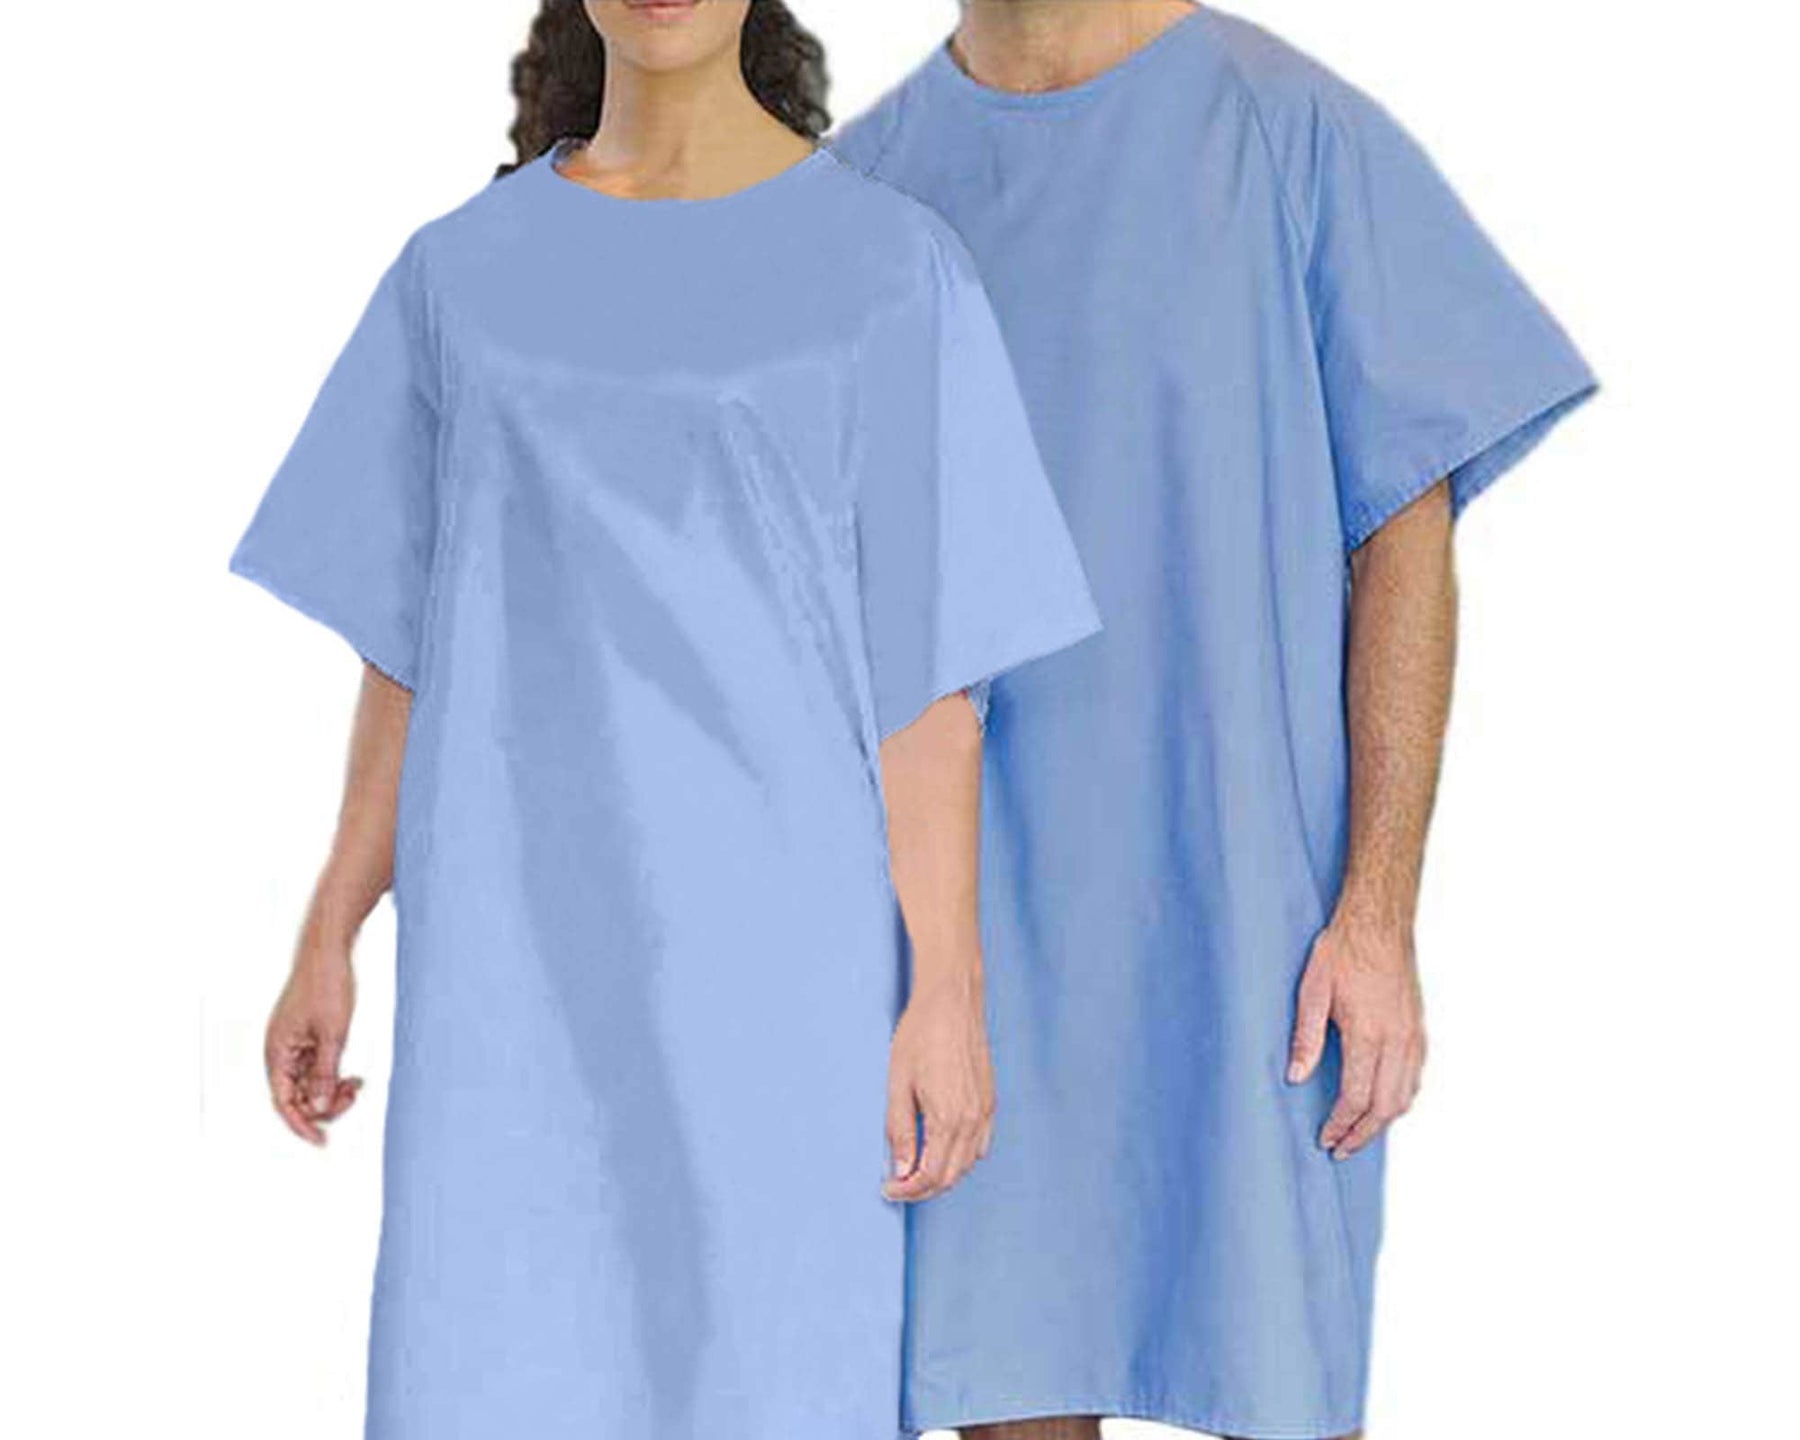 Blue Patient Gowns - Maple Shield Uniforms